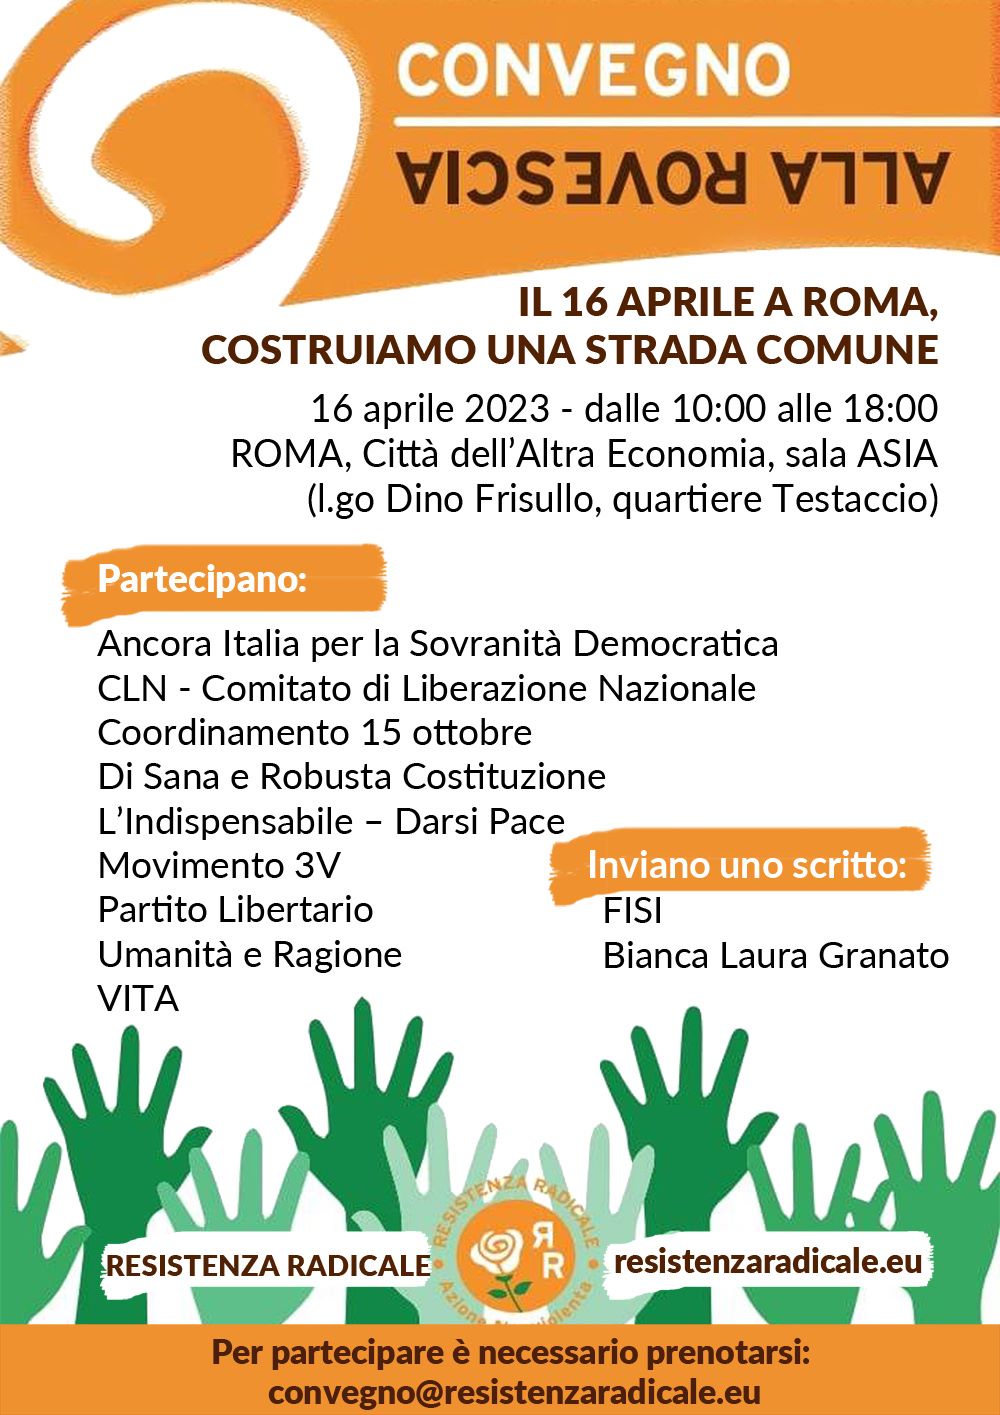 Roma, Domenica 16 aprile, la Resistenza si incontra e confronta.